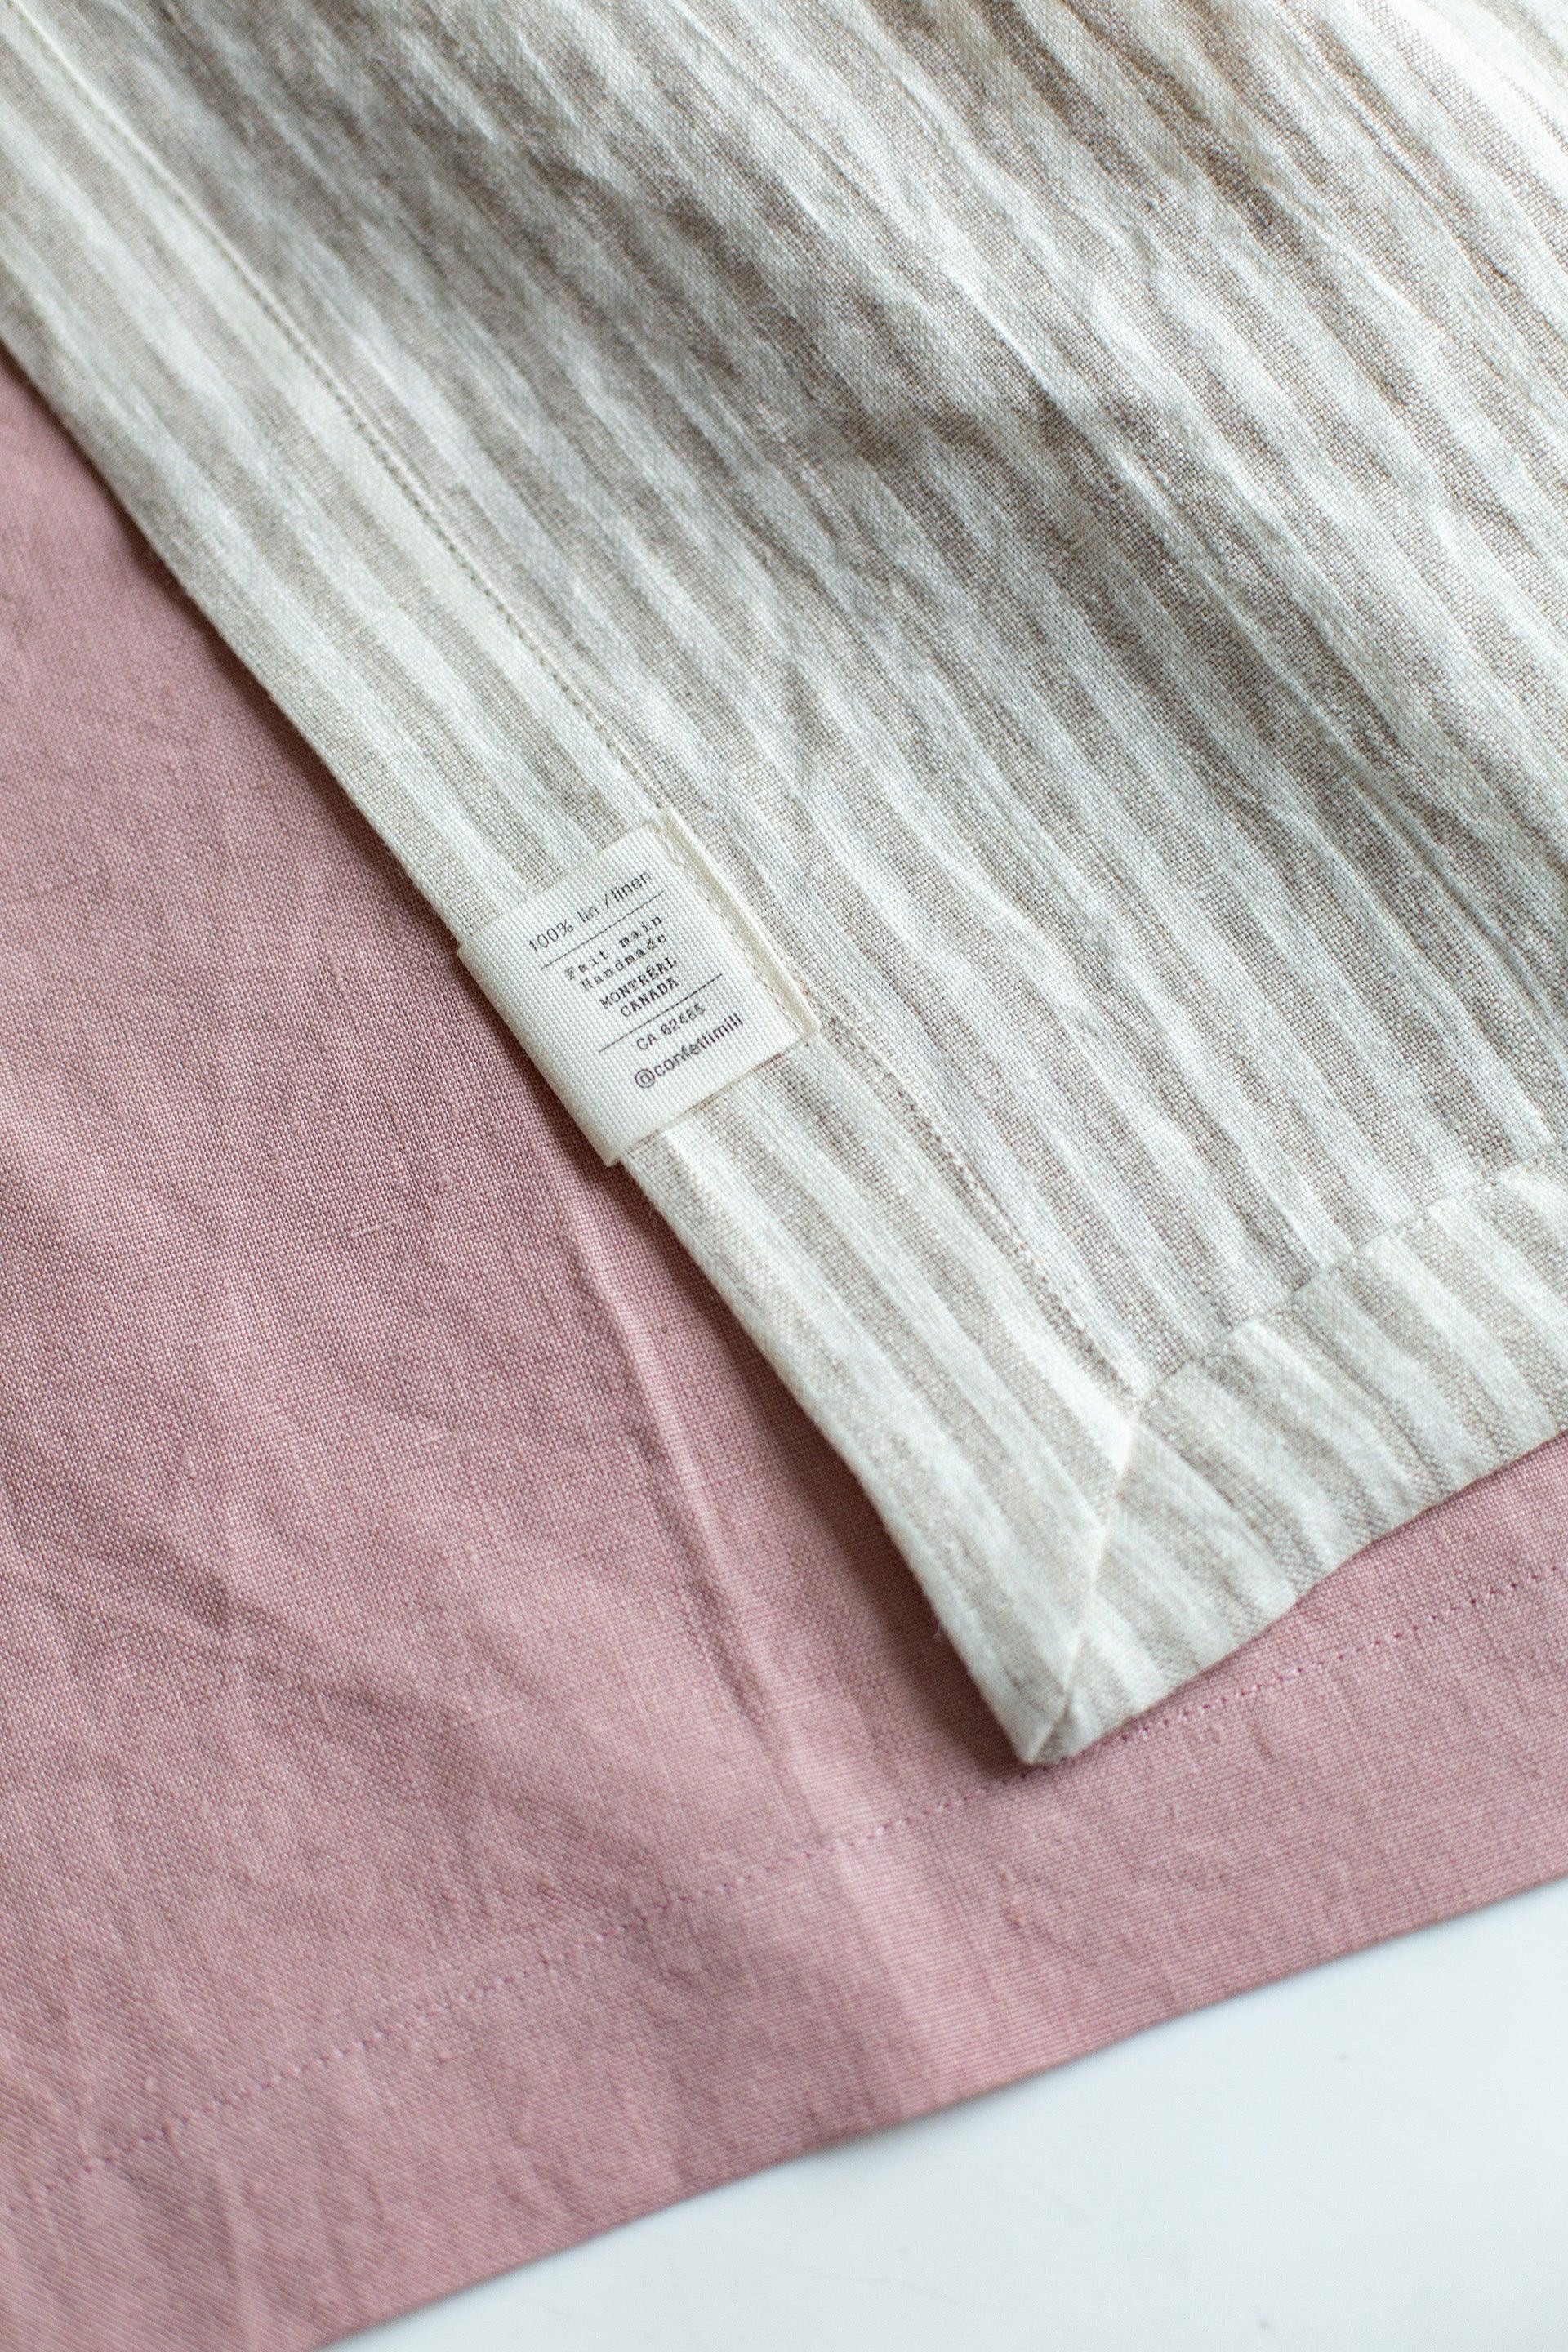 Linen Tablecloth - Stripes - Confetti Mill